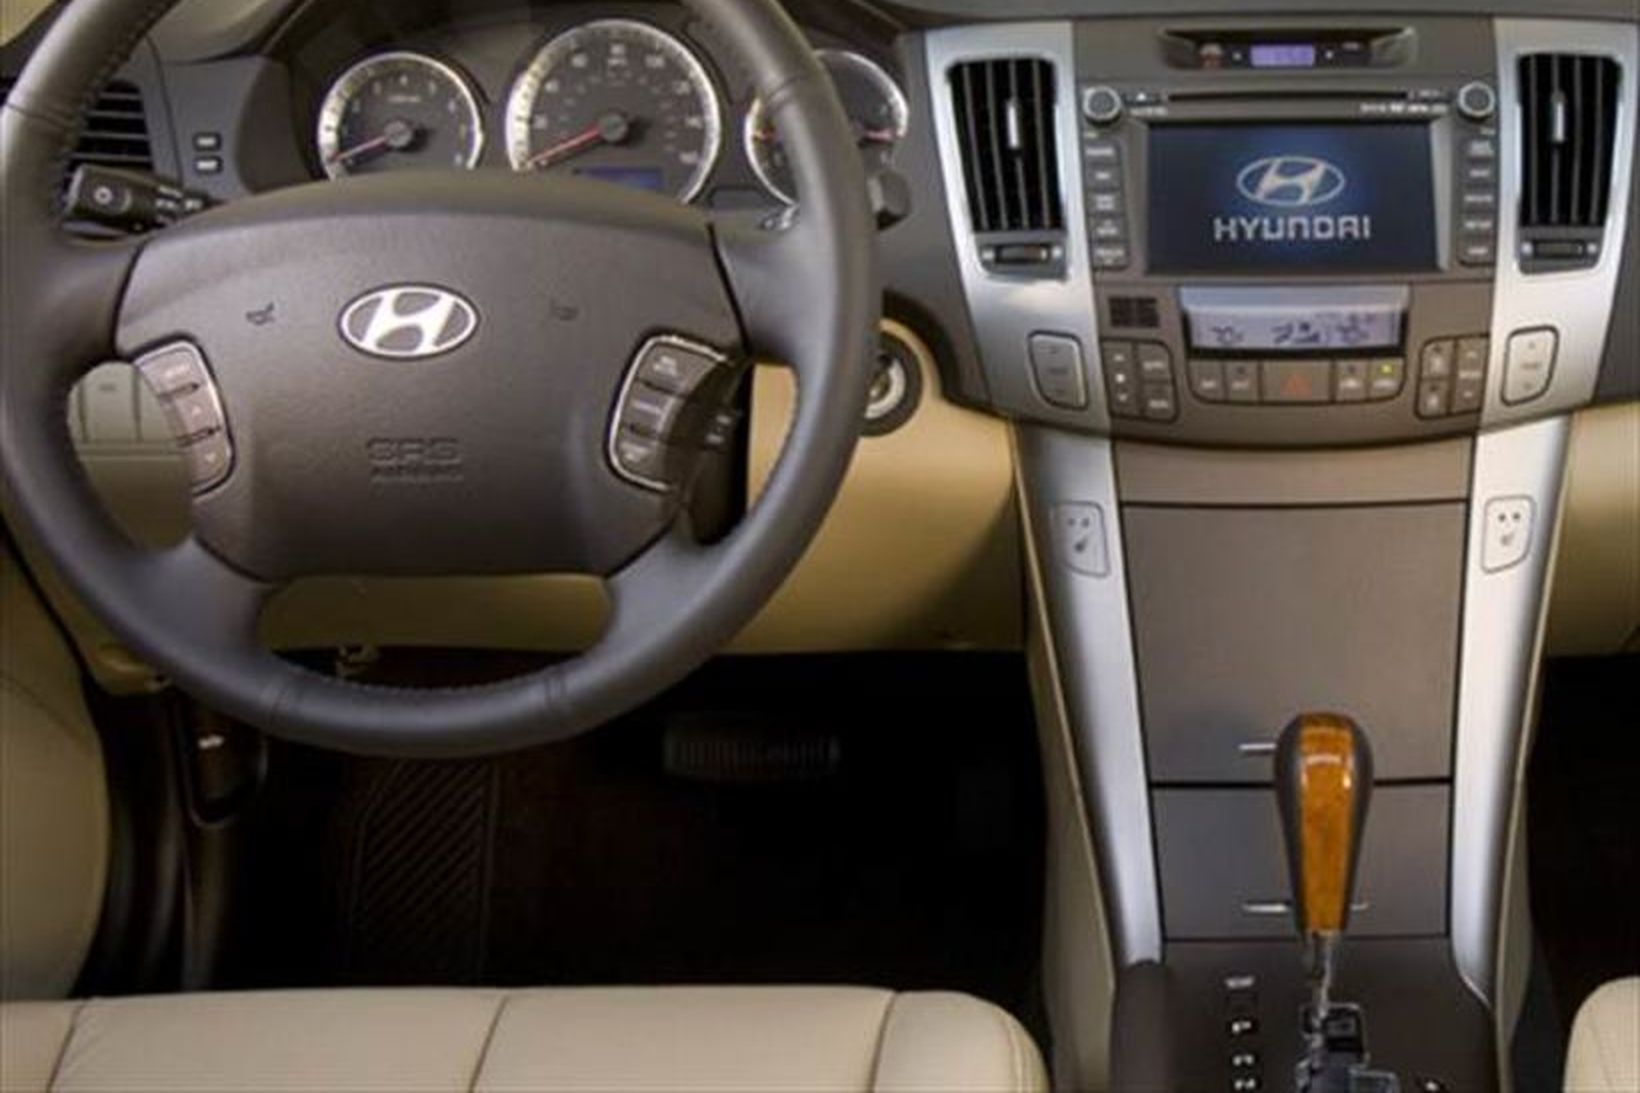 Innbyrði Hyundai Sonata-bifreiðar frá 2009.